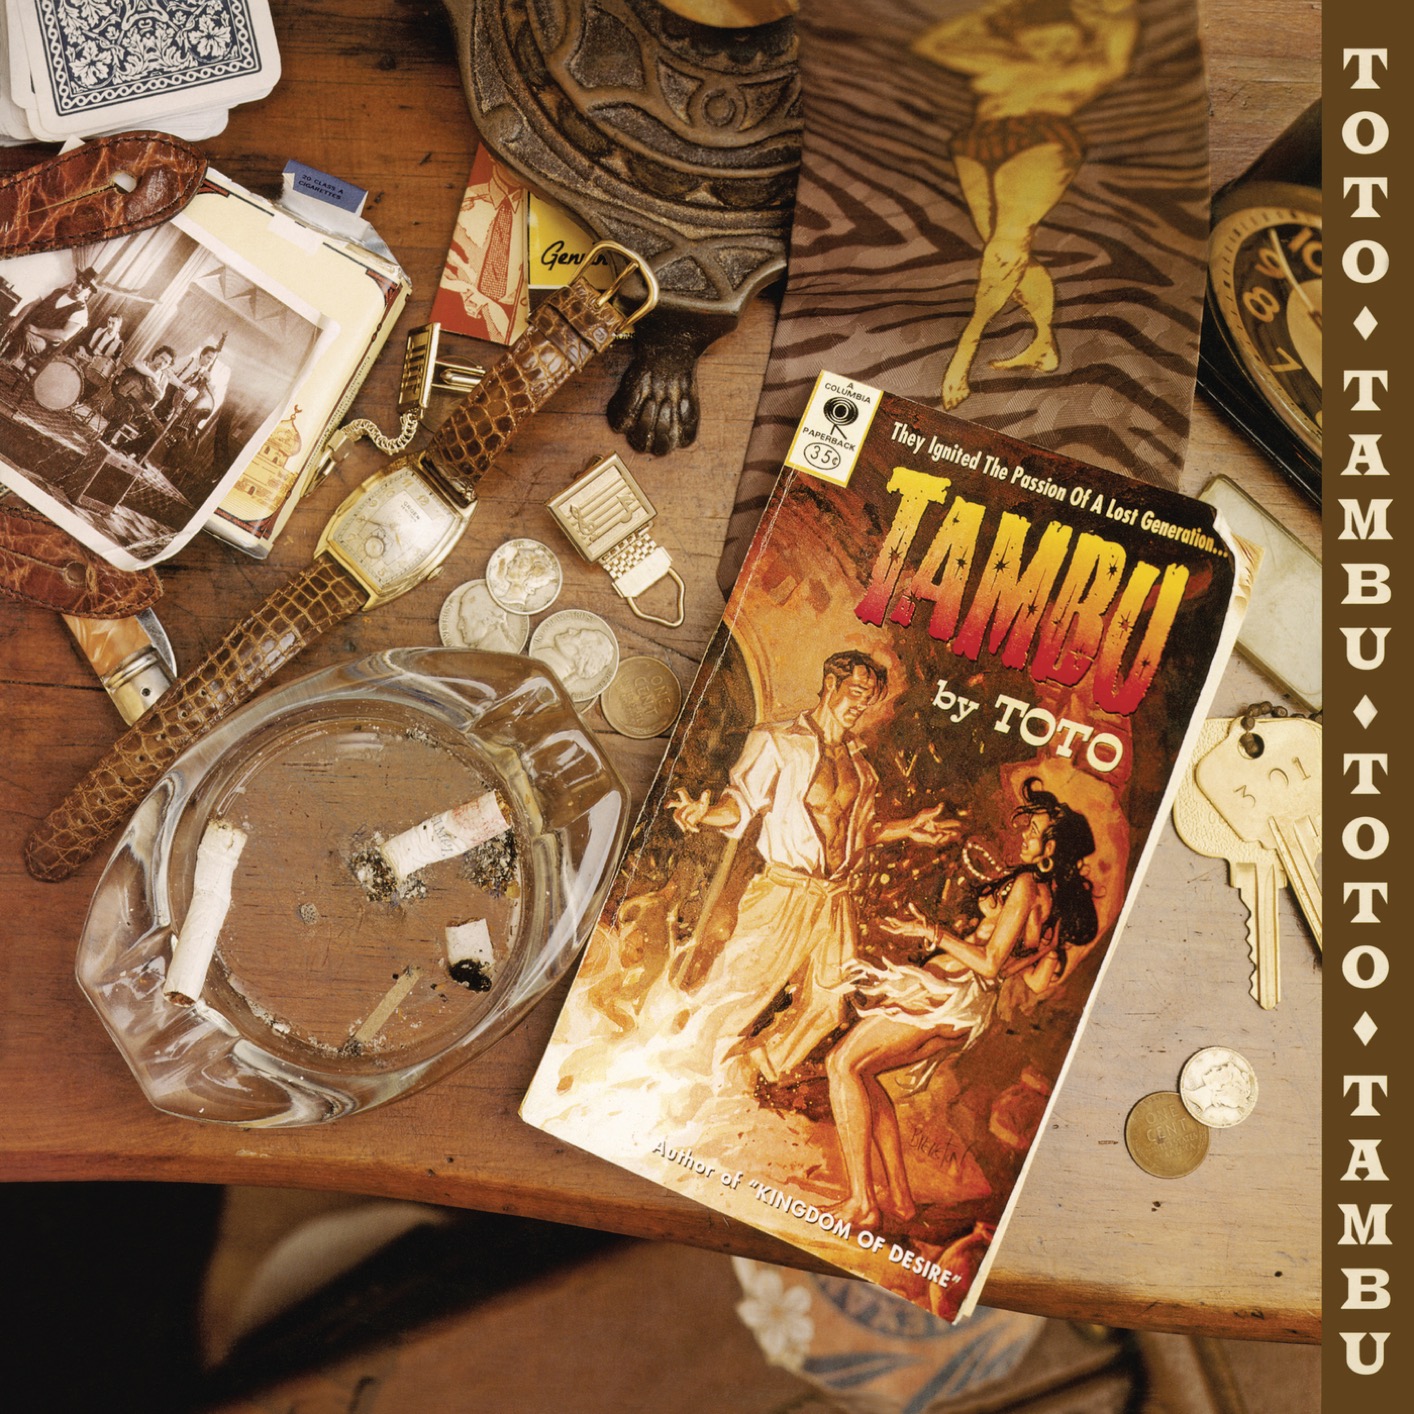 Toto - Tambu (Remastered) (1995/2020) [FLAC 24bit/192kHz]